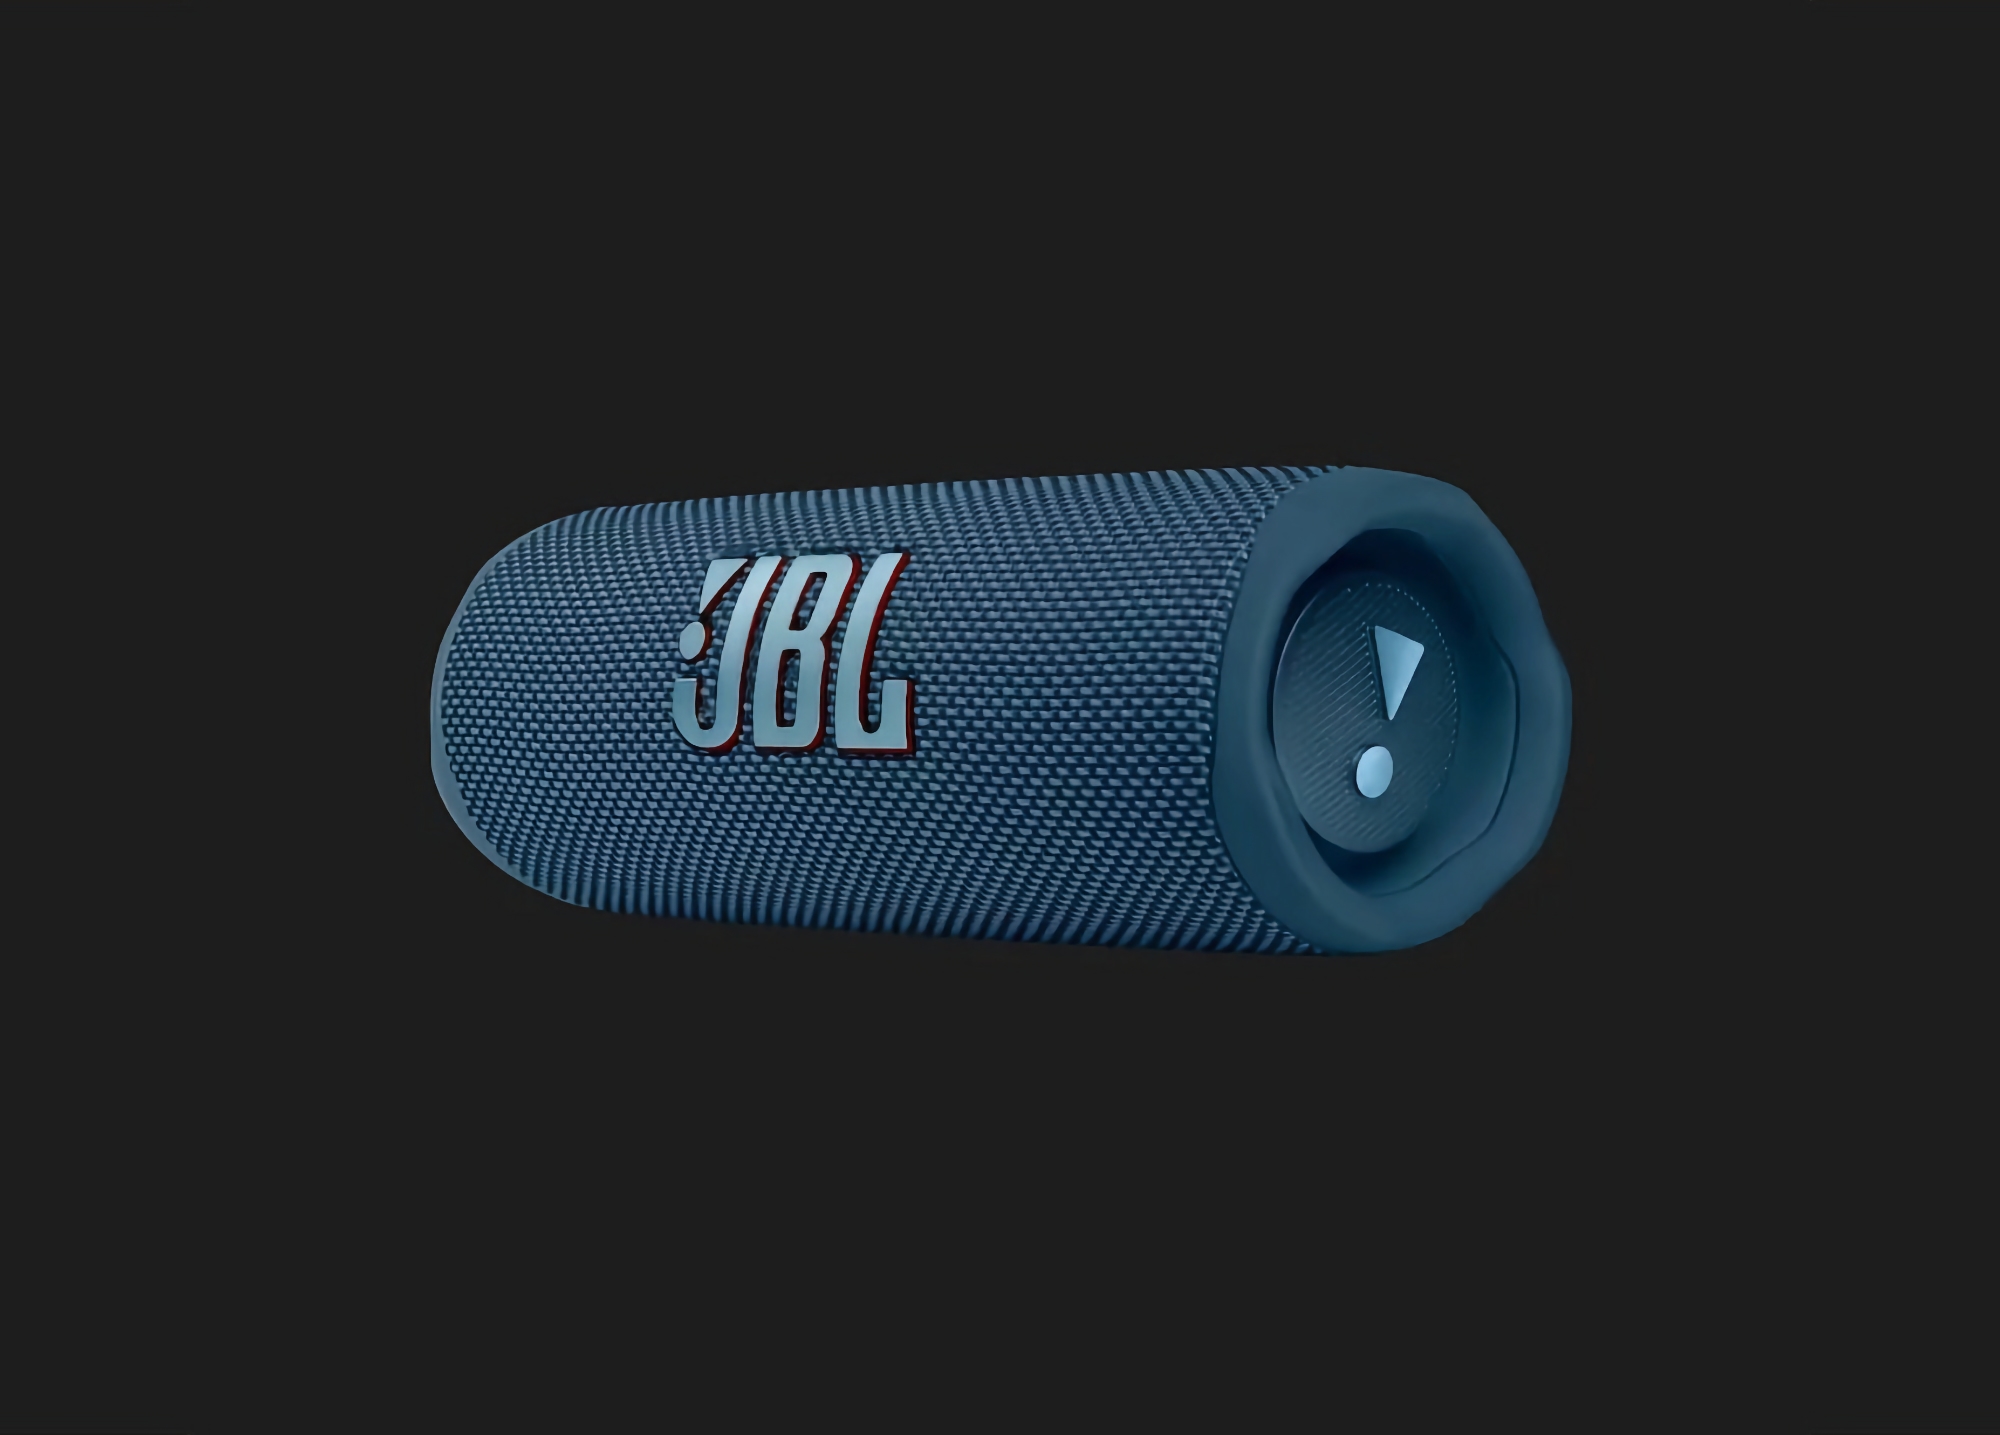 La JBL Flip 6, dotée d'une protection IP67 et d'une autonomie de 12 heures, est disponible sur Amazon au prix de 97,90 $ (32 $ de réduction).